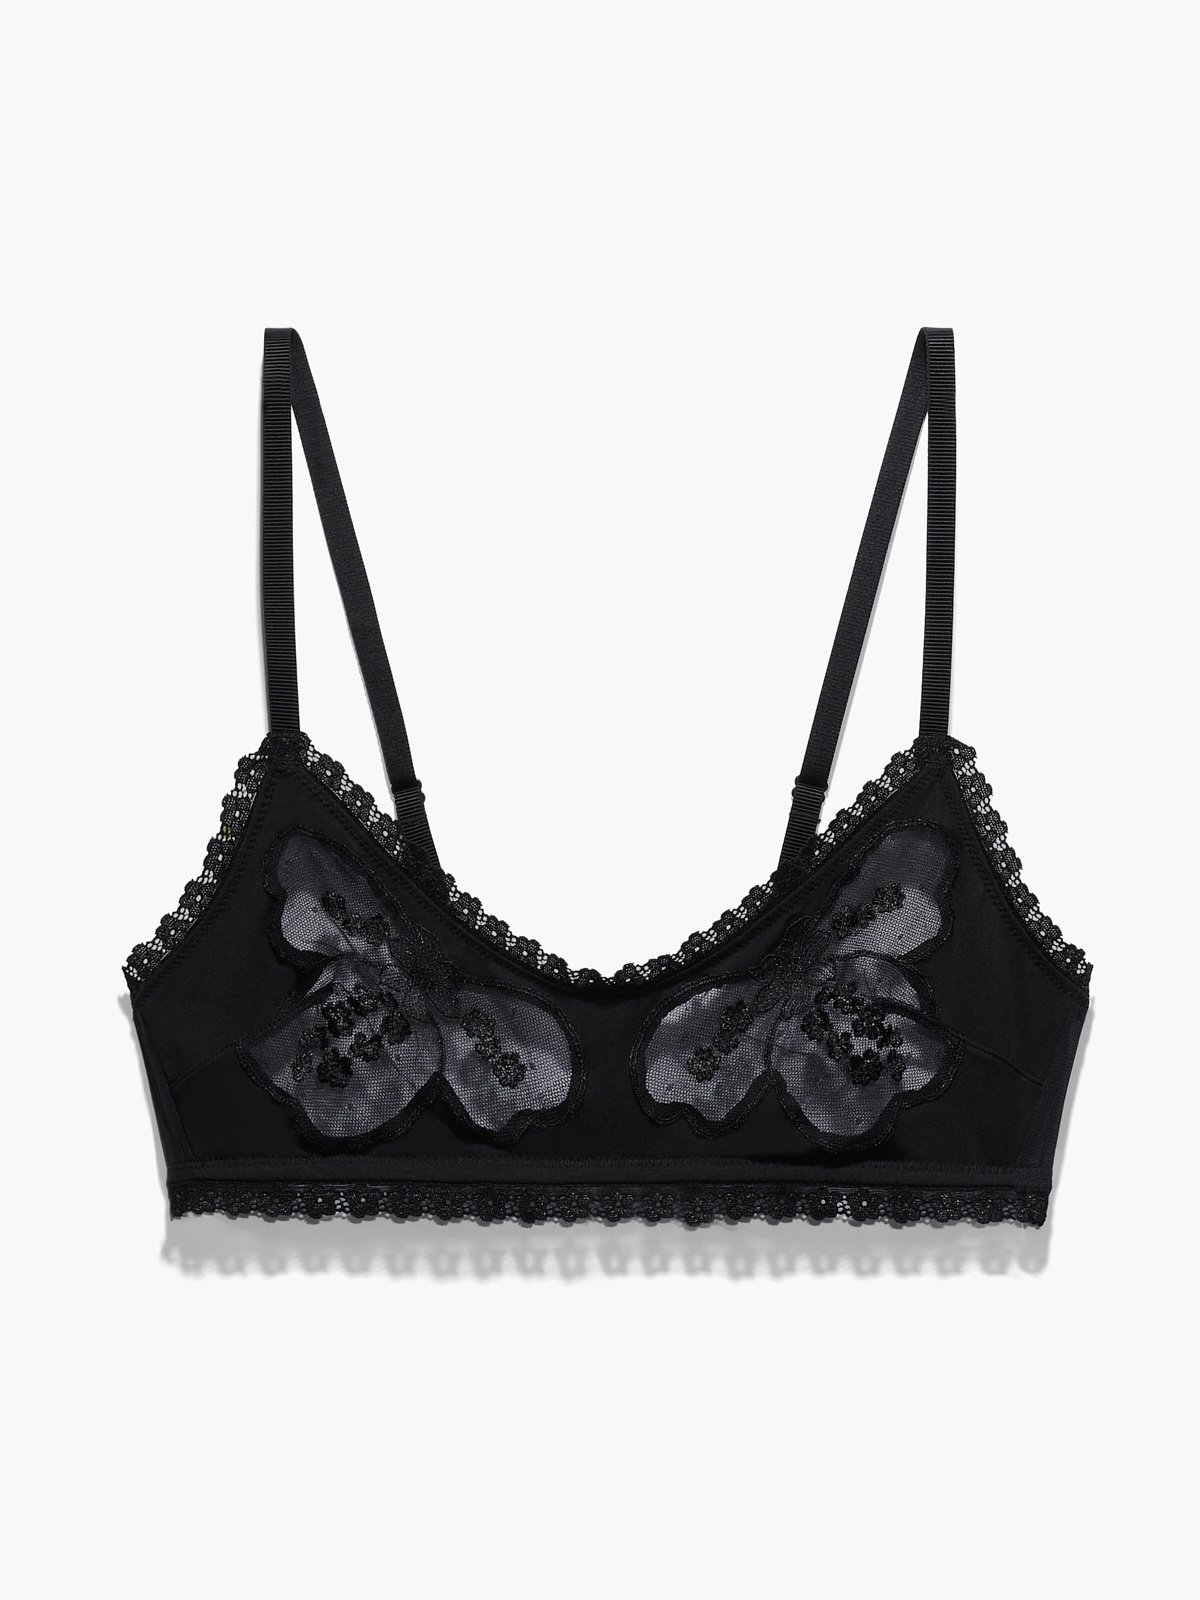 Paris Premier Lace Bralette In Black Curves • Impressions Online